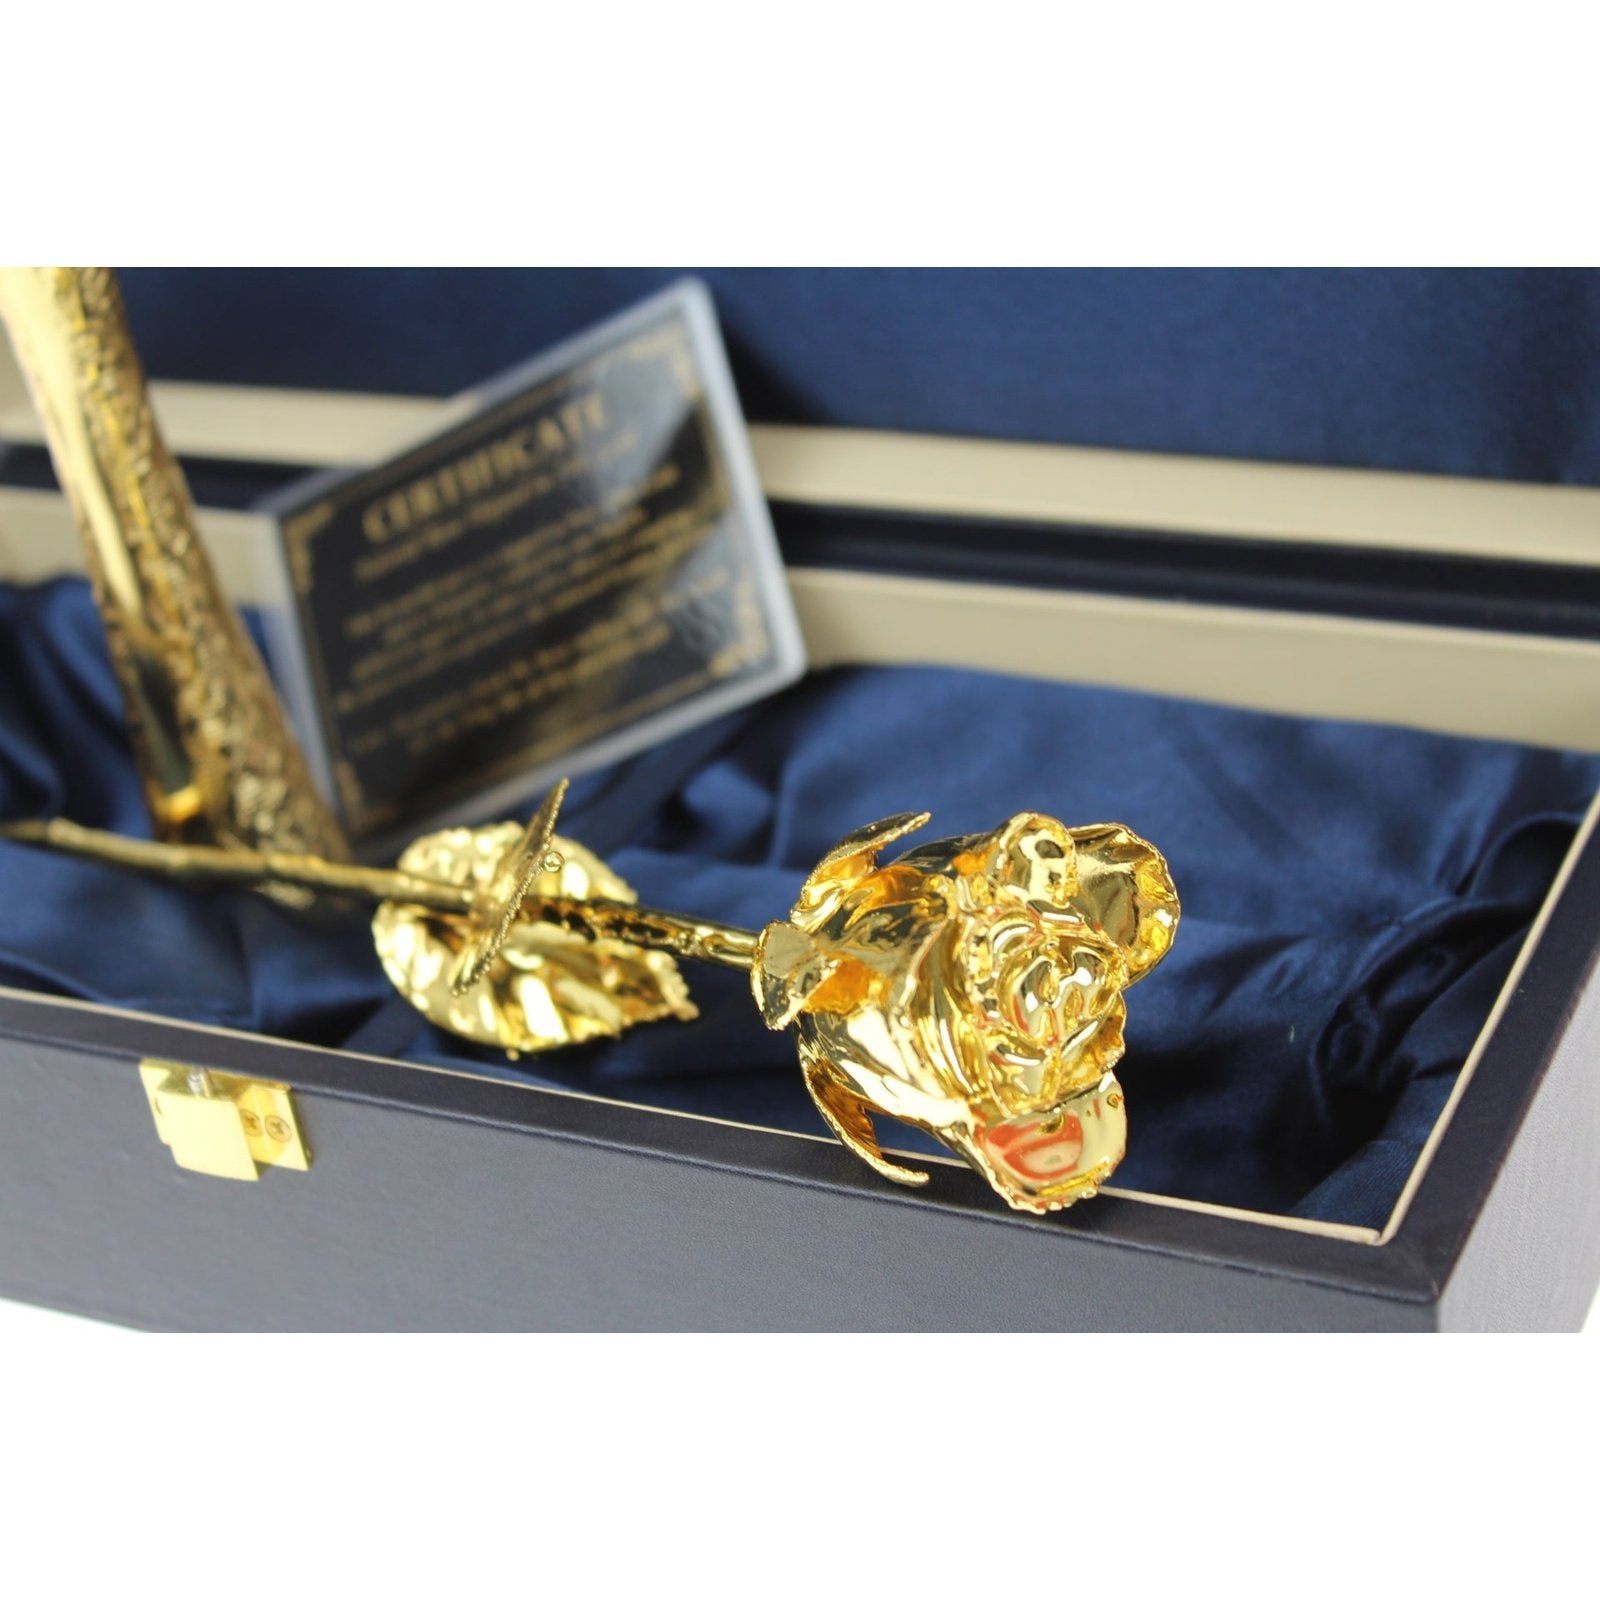 United Entertainment Roos met Gouden Vaasje in Luxe lederen doos